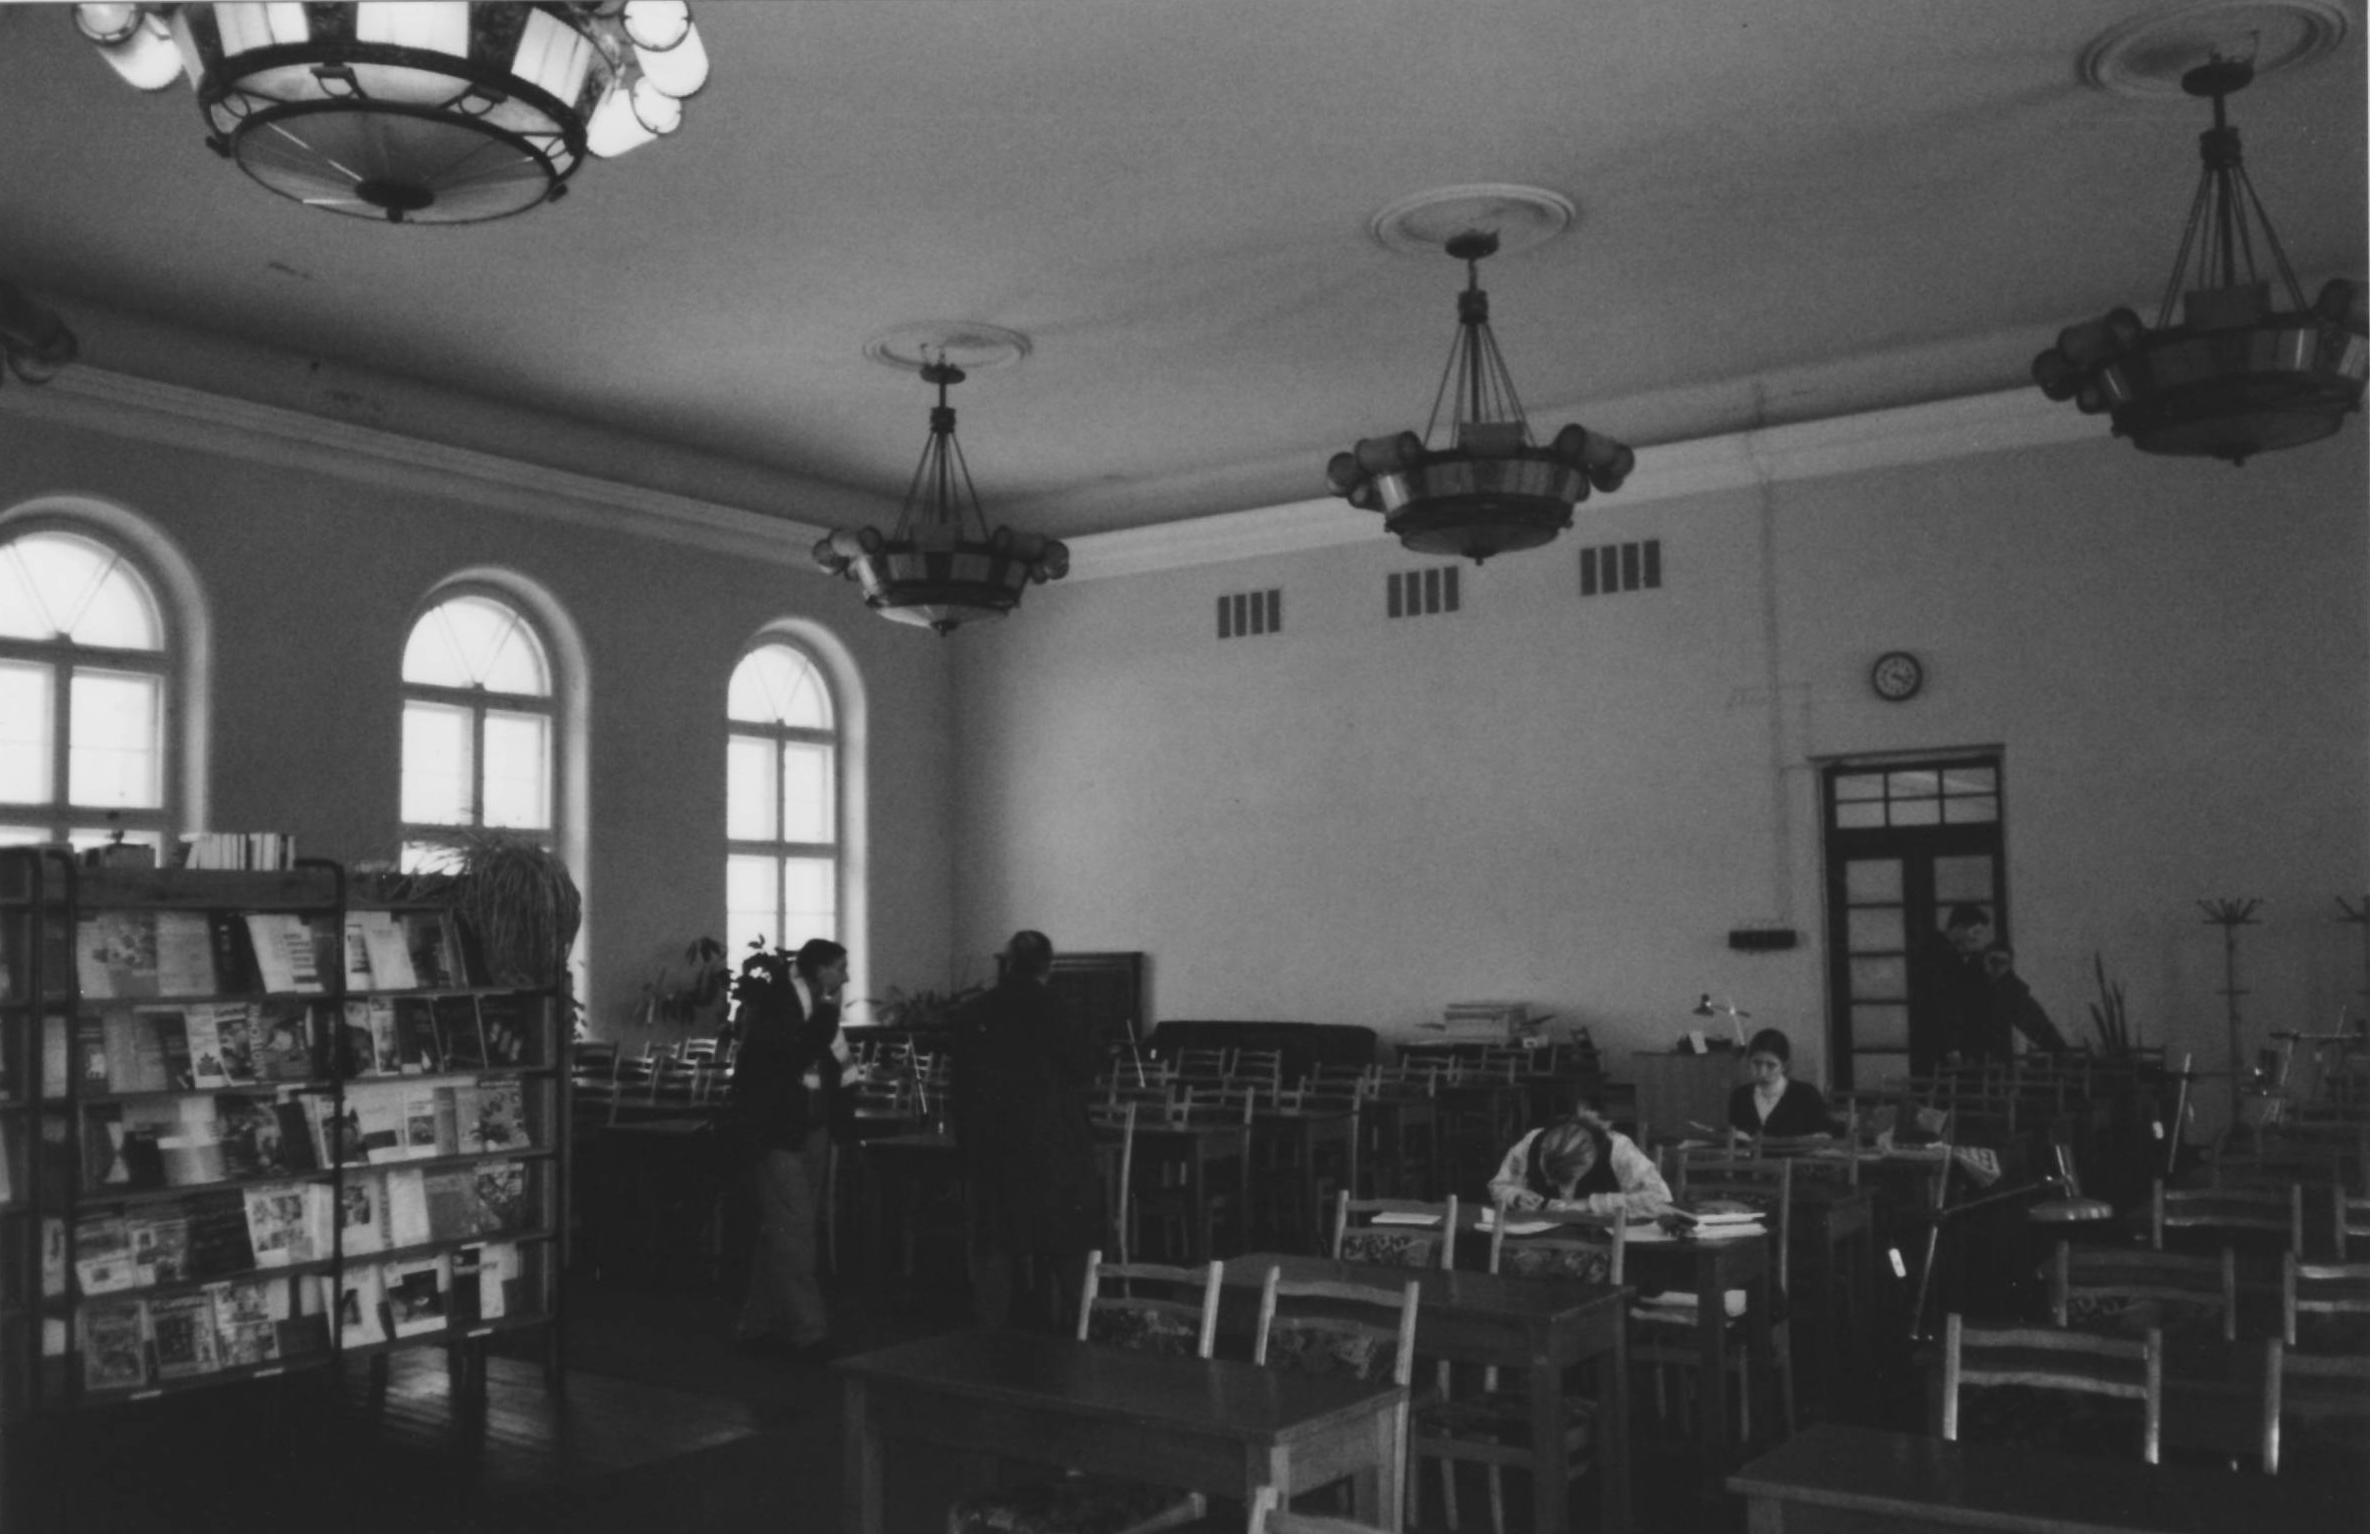 <p><strong>ЧИТАЛЬНЯ ФУНДАМЕНТАЛЬНОЙ БИБЛИОТЕКИ</strong></p>  <p>&nbsp;</p>  <p>Библиотека расположена симметрично напротив Большого зала. После реконструкции дворца, начатой в 1957 году, это помещение находится в распоряжении Фундаментальной библиотеки Латвийского университета Жизненных наук и технологий.</p>  <p>&nbsp;</p>  <p>В настоящее время эти комнаты перестроены.</p>